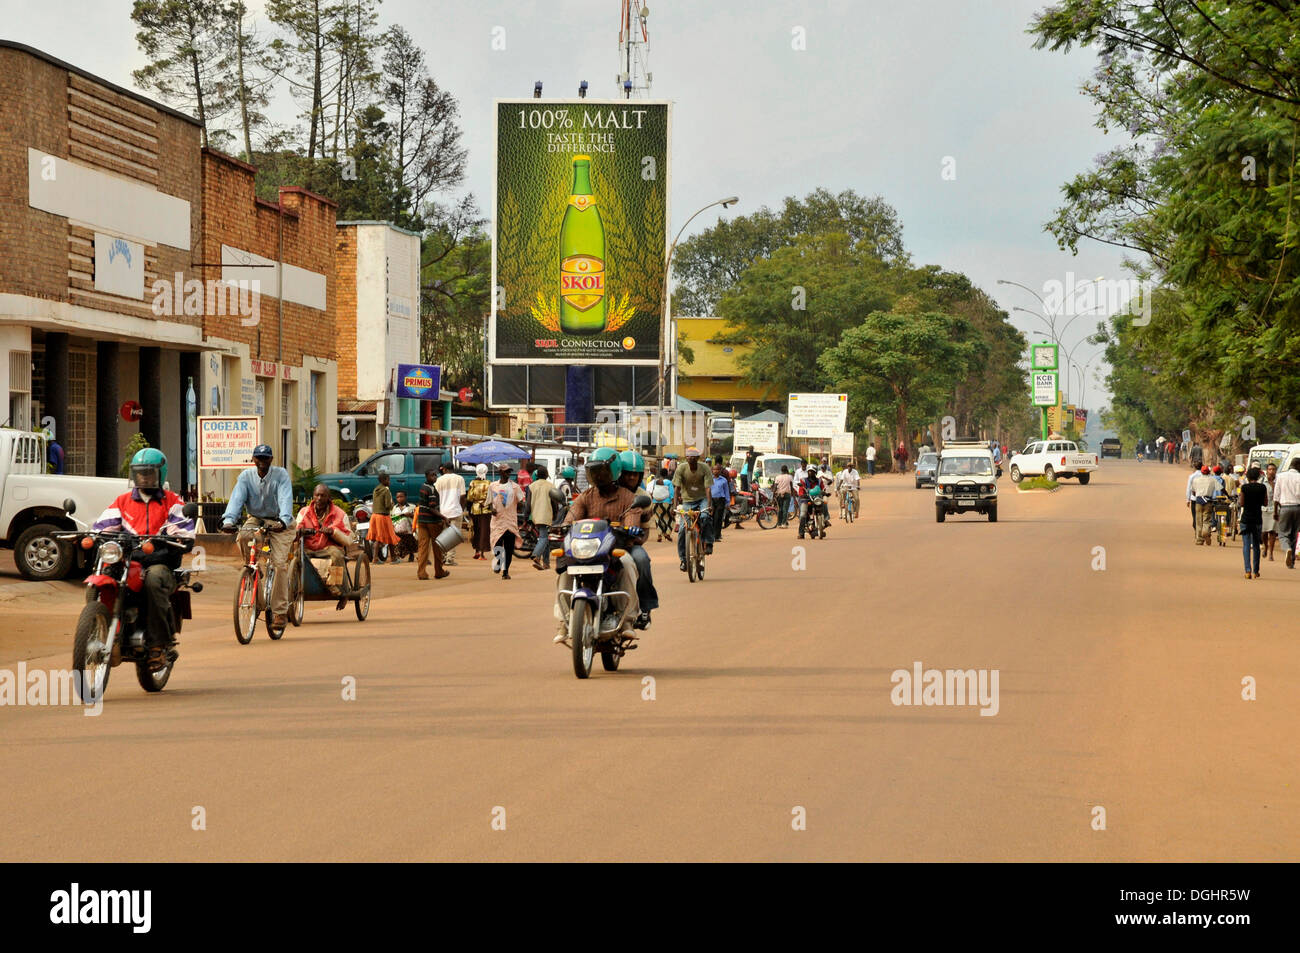 Straßenszene in Butare, Ruanda, Afrika Stockfoto